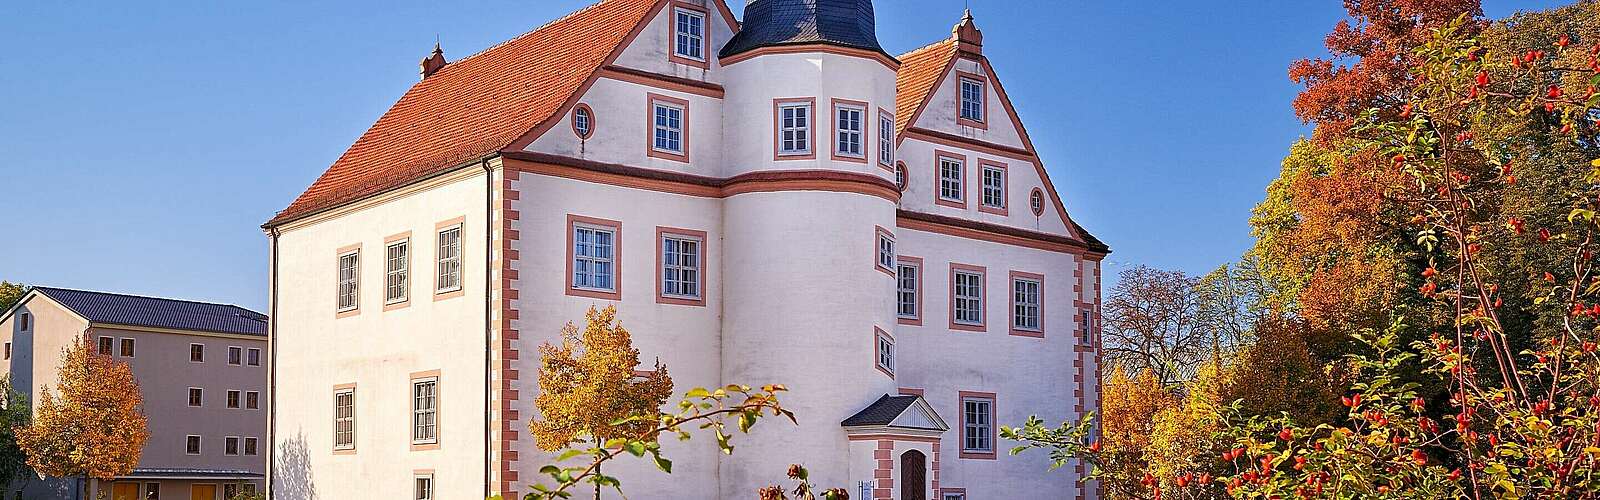 Schloss Königs Wusterhausen,
        
    

        Foto: Fotograf / Lizenz - Media Import/Frank Liebke